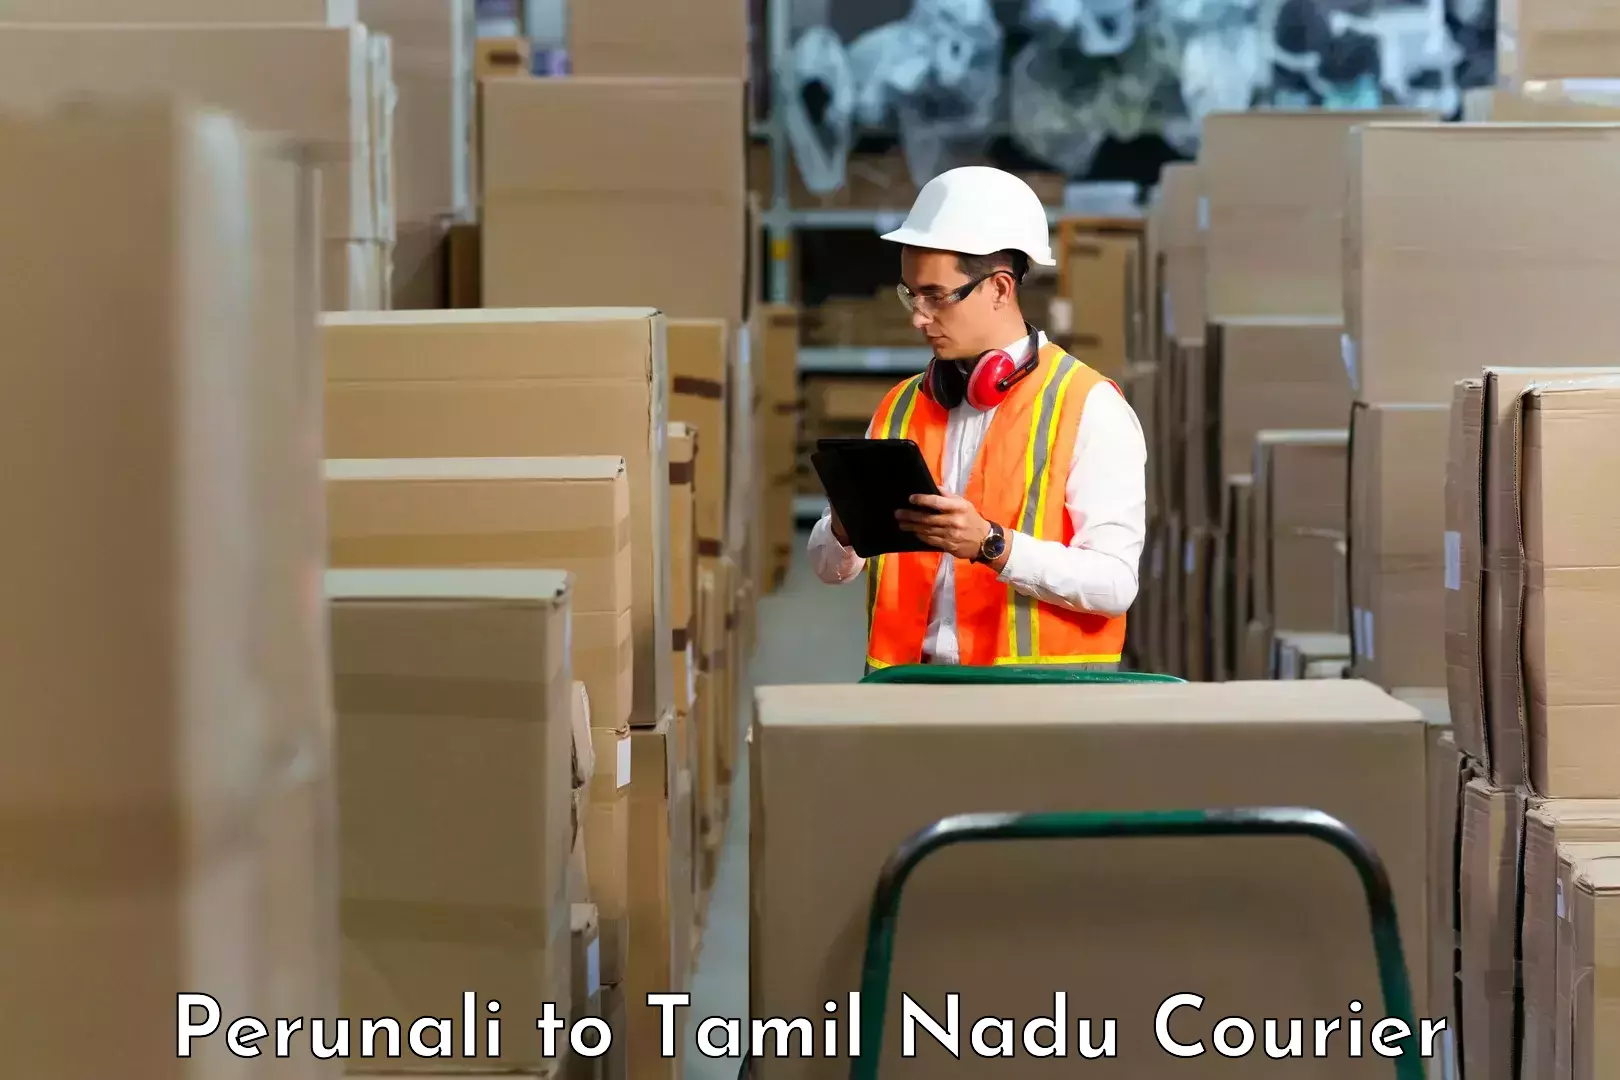 Nationwide parcel services Perunali to Villupuram